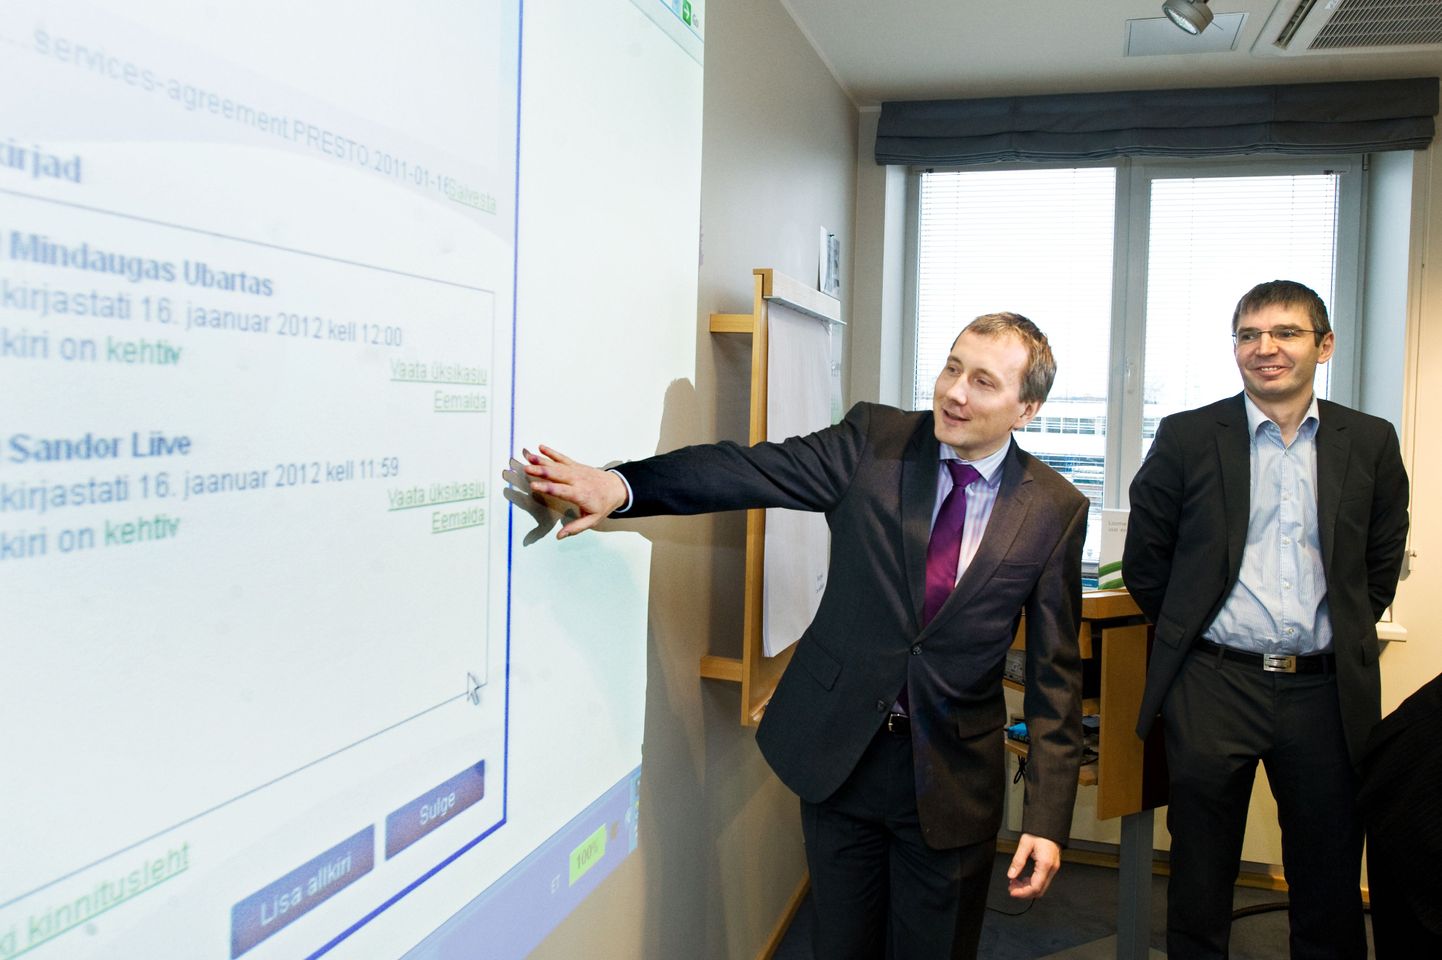 Eesti Energia juhatuse esimees Sandor Liive (vasakul) ja Tele2 Eesti juhatuse esimees Mindaugas Ubartas Televõrgu ASi müügilepingu sõlmimisel.